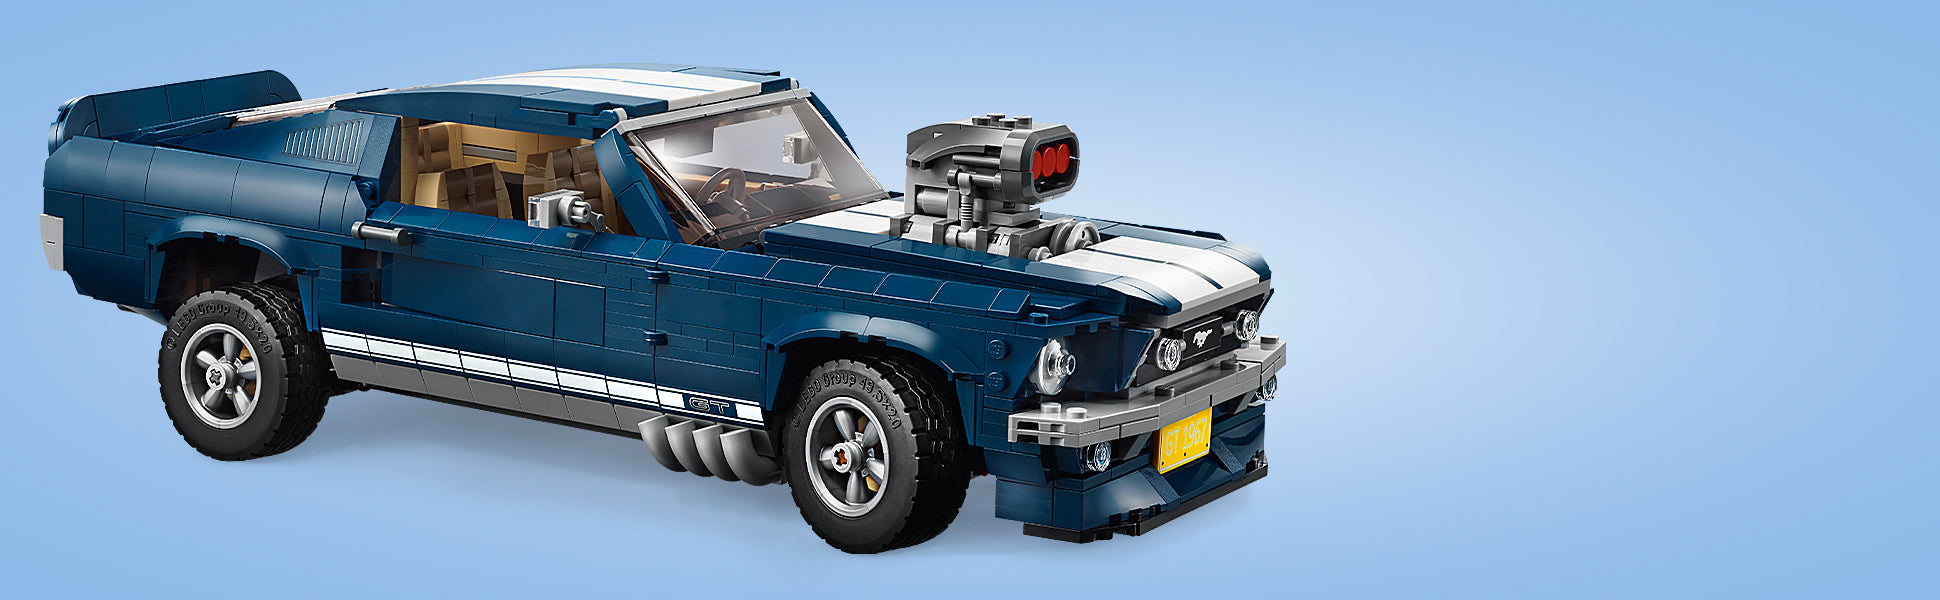 Ontdek de magie van een iconische Amerikaanse muscle car uit de jaren 1960 met de LEGO® Creator Ford Mustang met een donkerblauwe carrosserie met witte racestrepen, een motorkap-luchtinlaat, een mustang grille-embleem met opdruk, GT-emblemen en 5-spaaks velgen met banden voor goede grip. Deze authentieke replica, die werd ontwikkeld met input van Ford, kan worden uitgerust met verschillende extra's naar keuze, zoals een aantal kentekenplaten, een supercharger, een 'ducktail' spoiler achter, vette uitlaten, een 'chin' spoiler voor en een nitro-tank. Je kunt zelfs de hoogte van de achteras aanpassen om de wagen een extra wrede look te geven! Haal het dak eraf of doe de deuren open en je hebt toegang tot het gedetailleerde interieur met fraaie zitplaatsen, een radio, een werkend stuur en een versnellingspook in de middenconsole. Berg spullen op in de kofferbak of open de motorkap om het gedetailleerde, grote 390 V8-motorblok te kunnen zien, inclusief een accu, slangen en een luchtfilter. Deze geavanceerde bouwset boordevol nostalgie is speciaal ontworpen voor een uitdagende en plezierige bouwervaring en vormt een fantastische blikvanger voor thuis of op kantoor.  Een authentieke replica van een Ford Mustang uit de jaren 1960 met een donkerblauwe carrosserie met witte racestrepen, een luchtinlaat, 5-spaaks velgen met banden voor goede grip en een aantal extra's die naar keuze zijn toe te passen. Doe de deuren open of haal het dak eraf om bij het gedetailleerde interieur te komen, met fraaie zitplaatsen, een radio, een versnellingspook in de middenconsole en een werkend stuur. Open de kofferbak om er spullen in op te bergen en til de motorkap op om de gedetailleerde Ford Mustang V8-motor te bekijken met een accu, slangen en een luchtfilter. Bevat ook een mustang grille-embleem met opdruk en 2 GT-emblemen. Pas de Ford Mustang naar keuze aan met de inbegrepen supercharger, een 'ducktail' spoiler achter, vette uitlaten, een 'chin' spoiler voor en een nitro-tank. Kies uit een aantal verschillende nummerplaten. Maak de motorkap open en bekijk de realistische details van de motor. Pas de hoogte van de achteras aan om de wagen een extra wrede look te geven! Speciale elementen die nieuw zijn vanaf maart 2019: 5-spaaks velgen, een 2x8 steen met boog, een 1x3 tegel met mustang-logo en een 2x4 boog met 'GT'-embleem. Afmetingen: ca. 10 cm hoog, 34 cm lang en 14 cm breed.